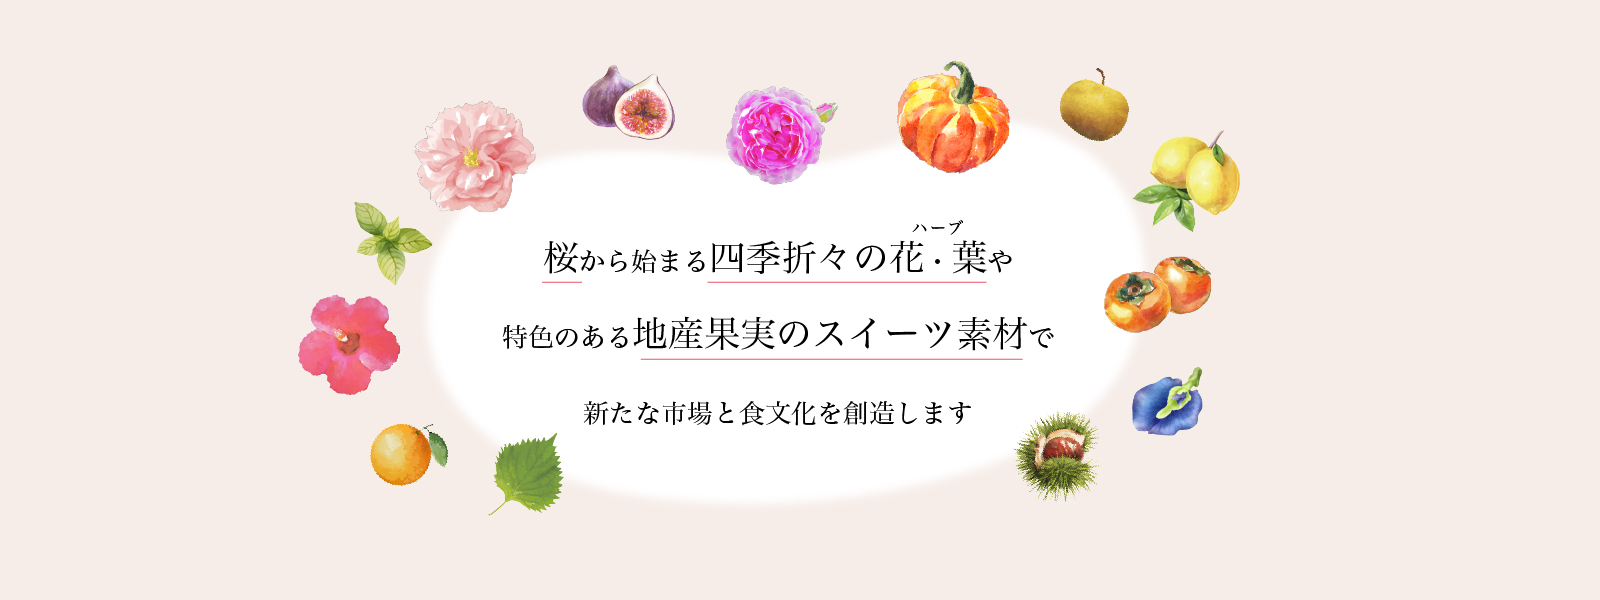 山眞産業株式会社 花びら舎 桜から始まる四季折々のスイーツ素材